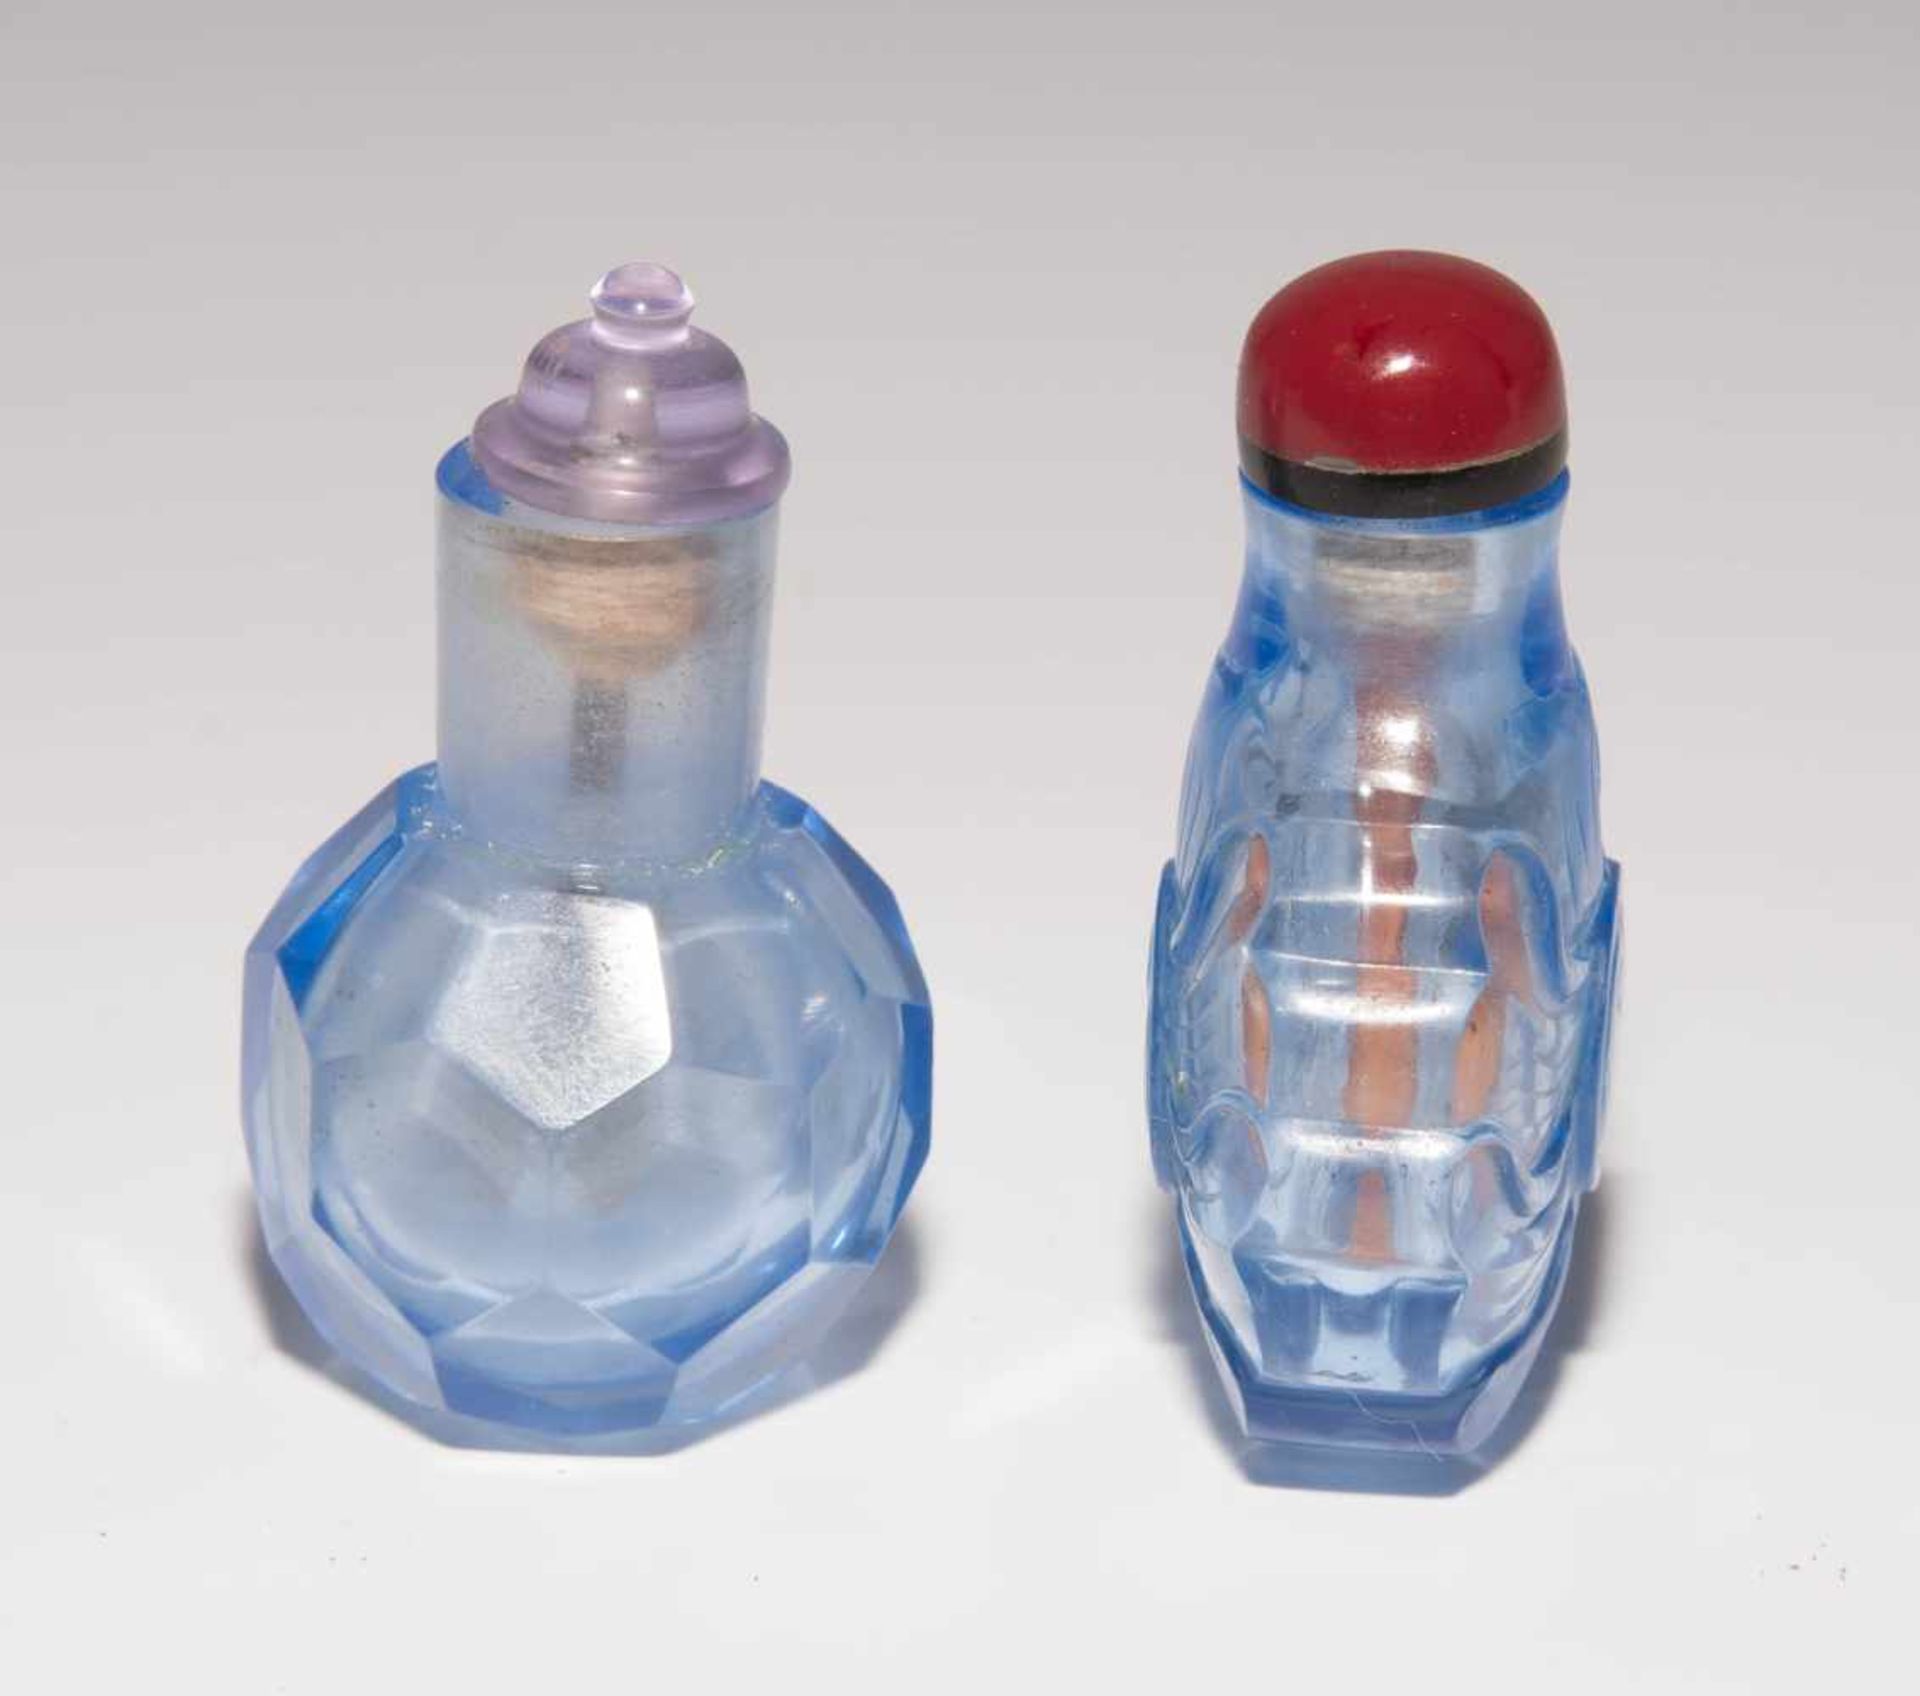 6 Glas Snuff BottlesChina. Hellblaues, transparentes Glas. Ein Doppel-Snuff Bottle, zwei mit - Bild 11 aus 22